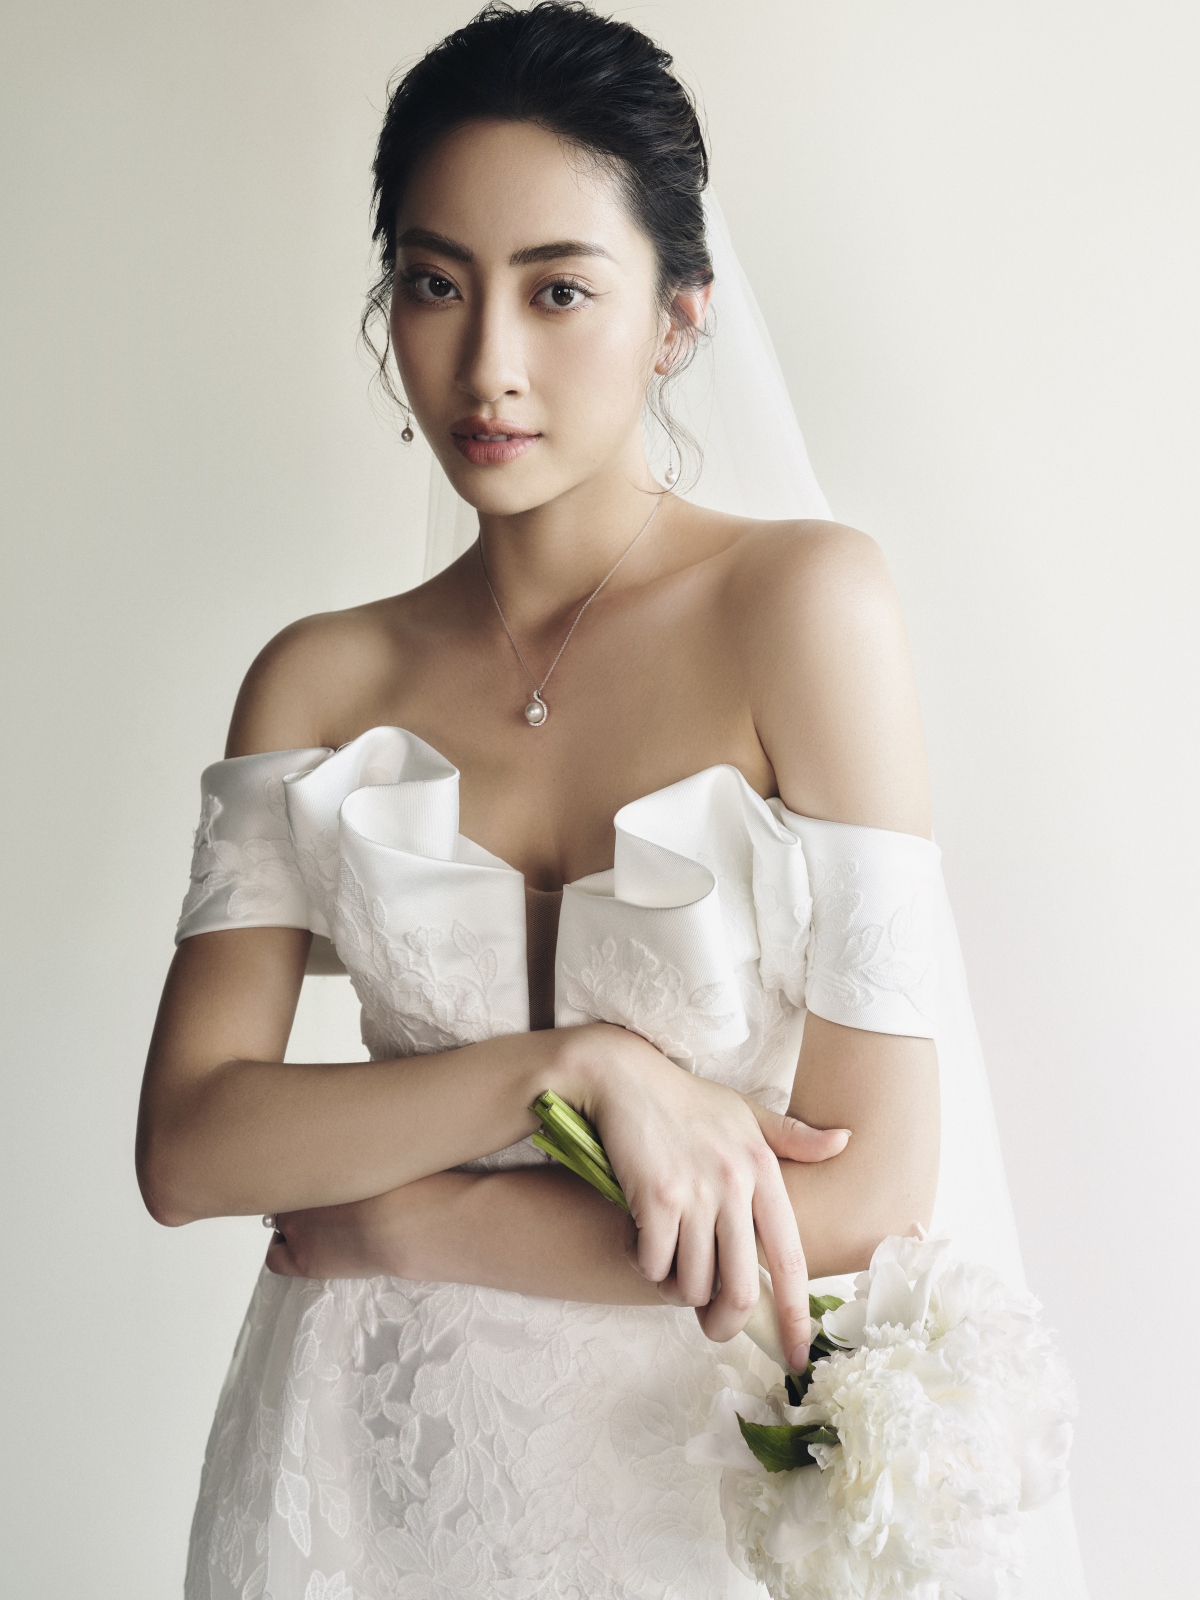 Hoa hậu Lương Thùy Linh làm cô dâu đẹp thanh khiết trong bộ ảnh mới - Ảnh 1.